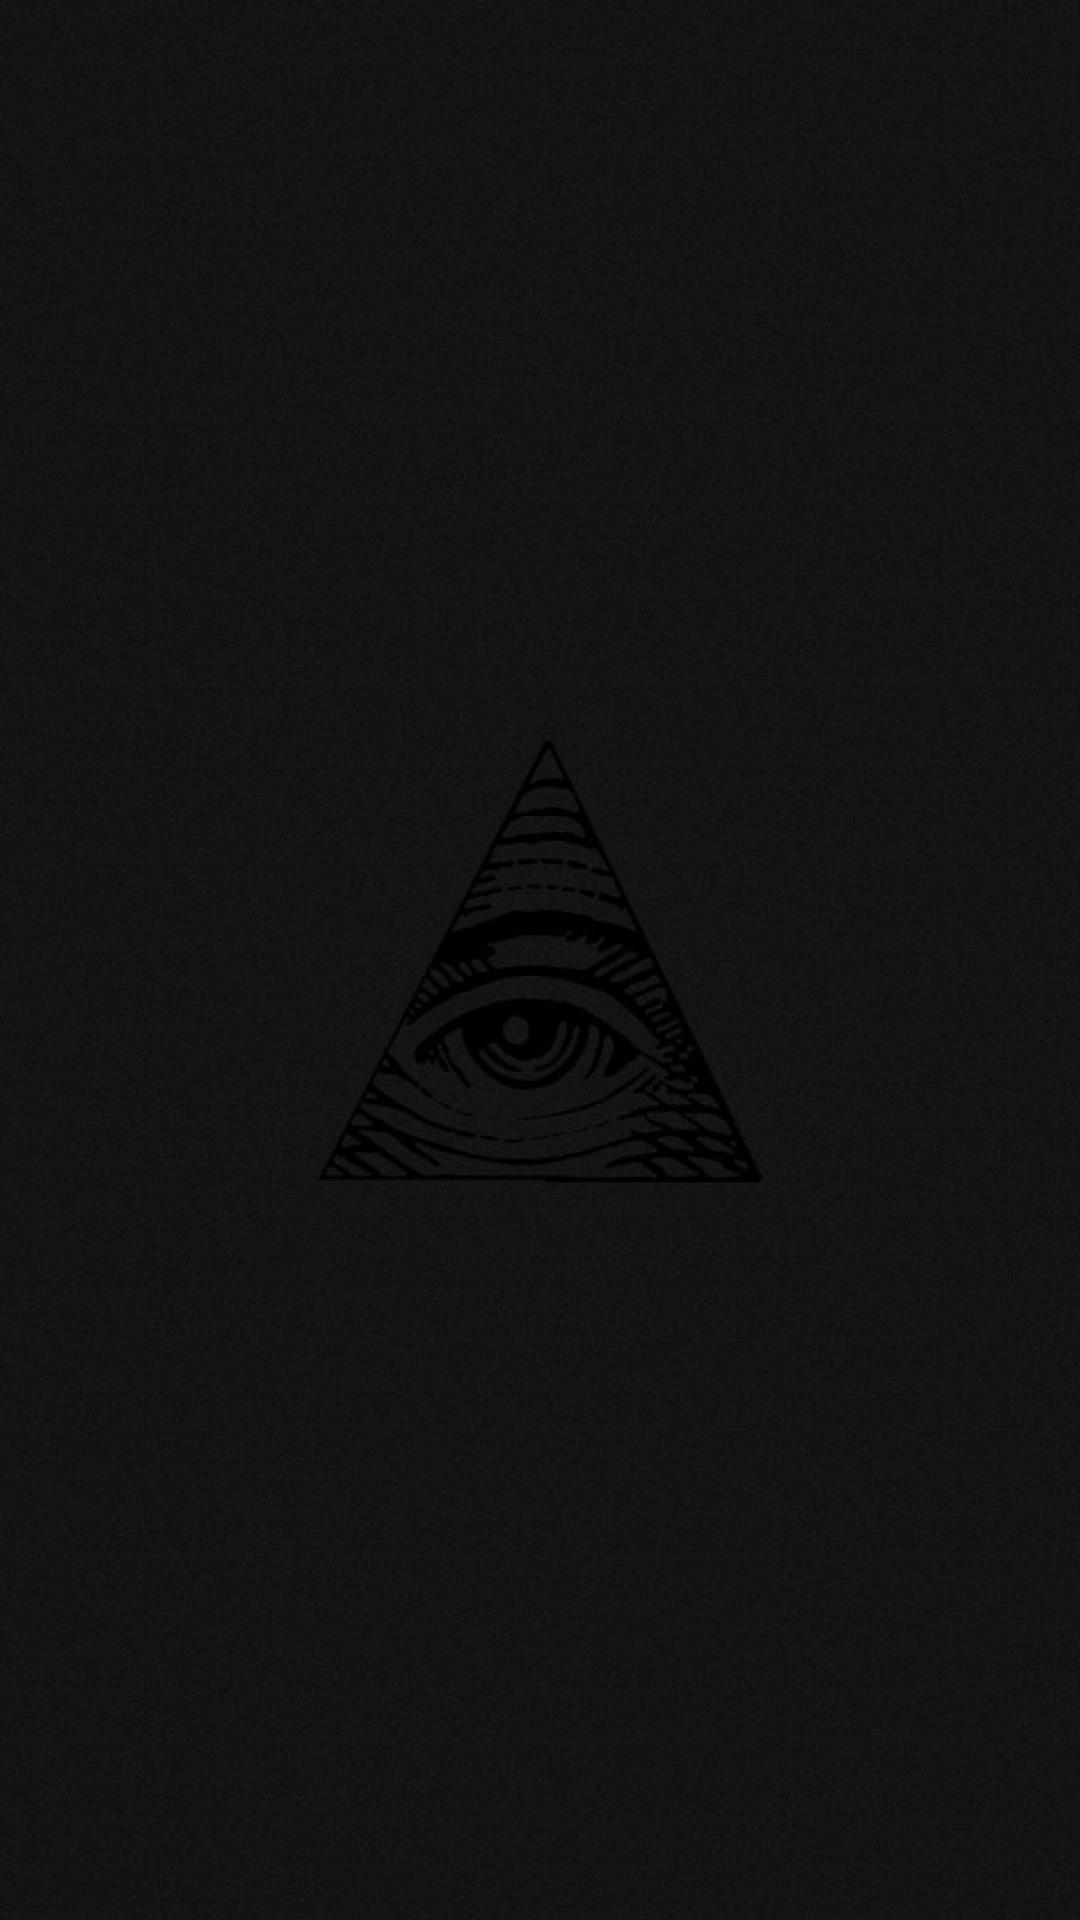 Eyes illuminati wallpaper